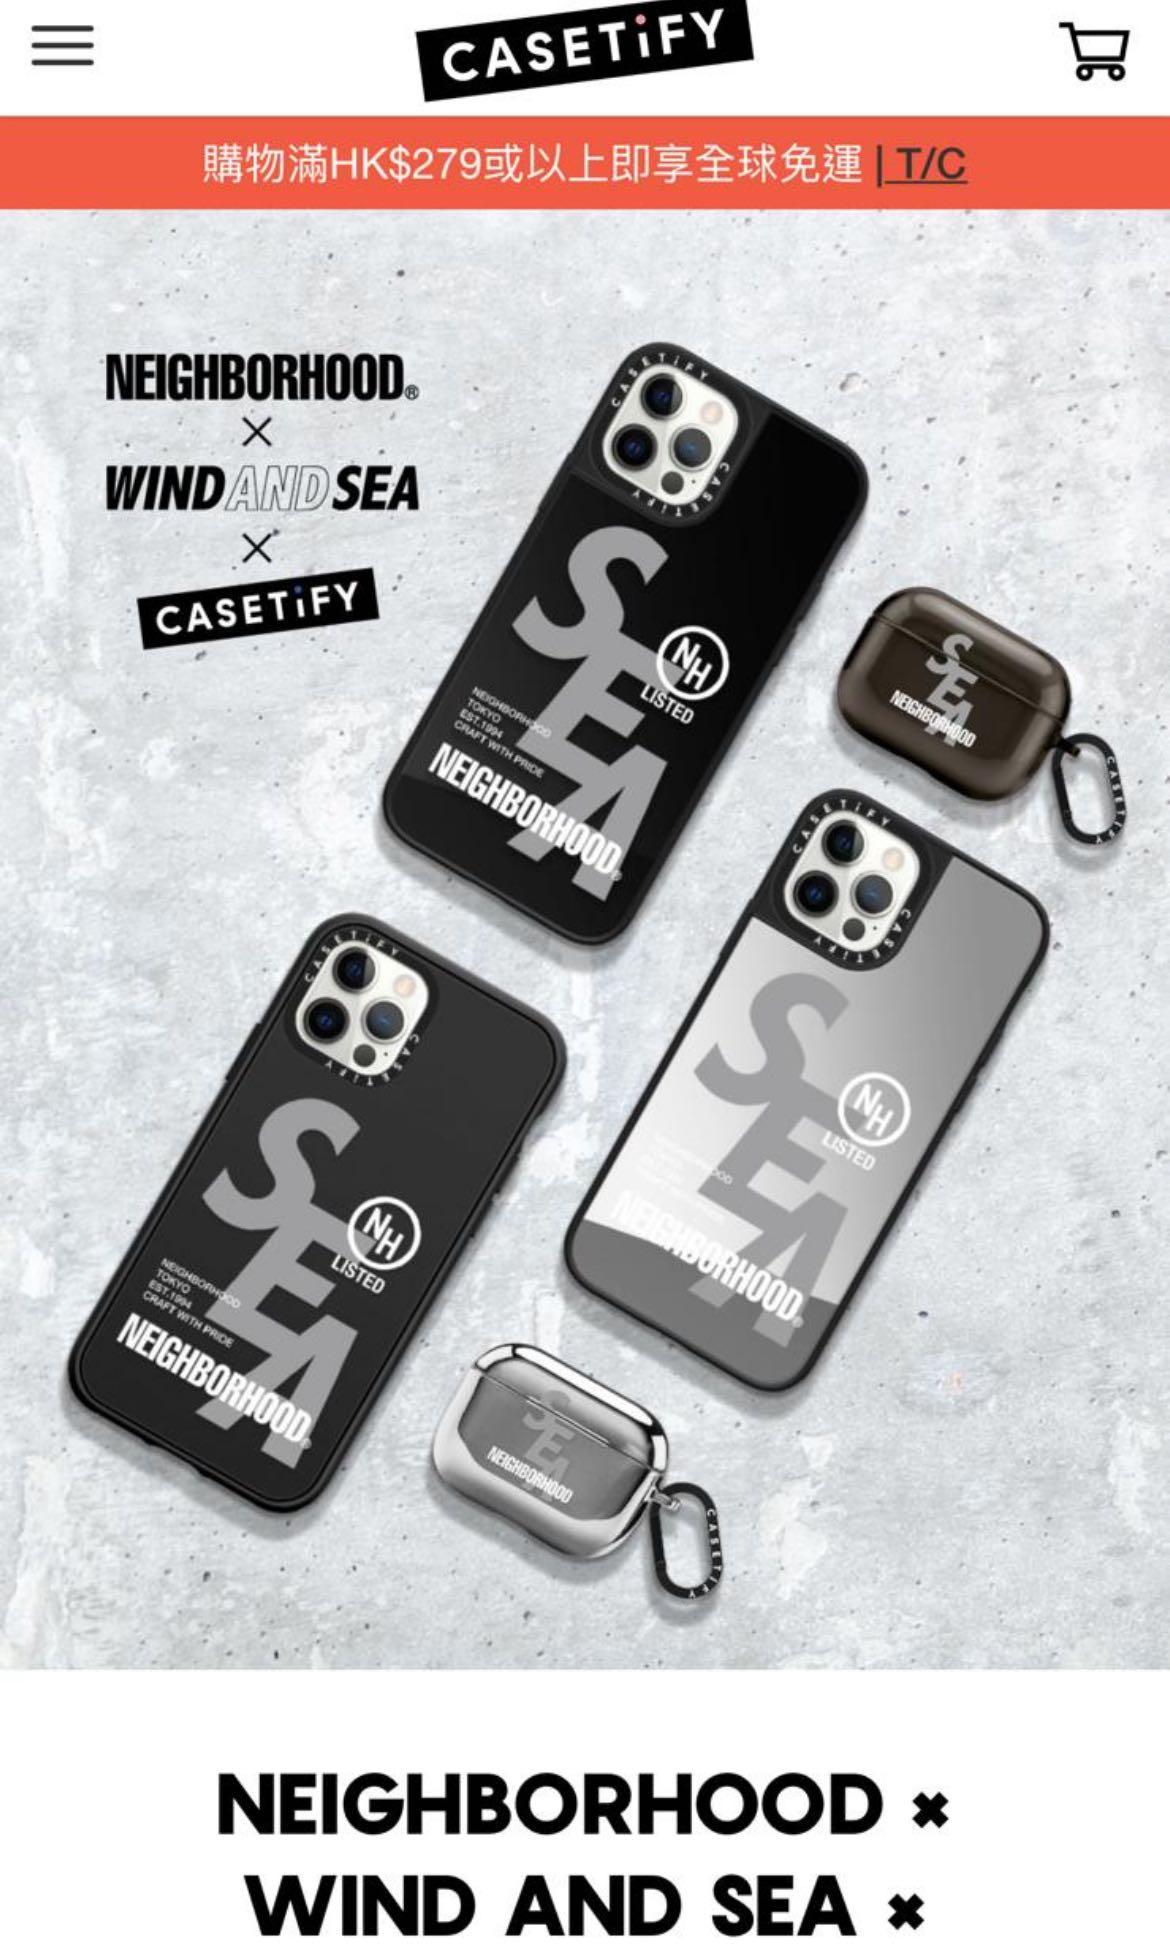 WIND AND SEA × NEIGHBORHOOD x CASETiFY-